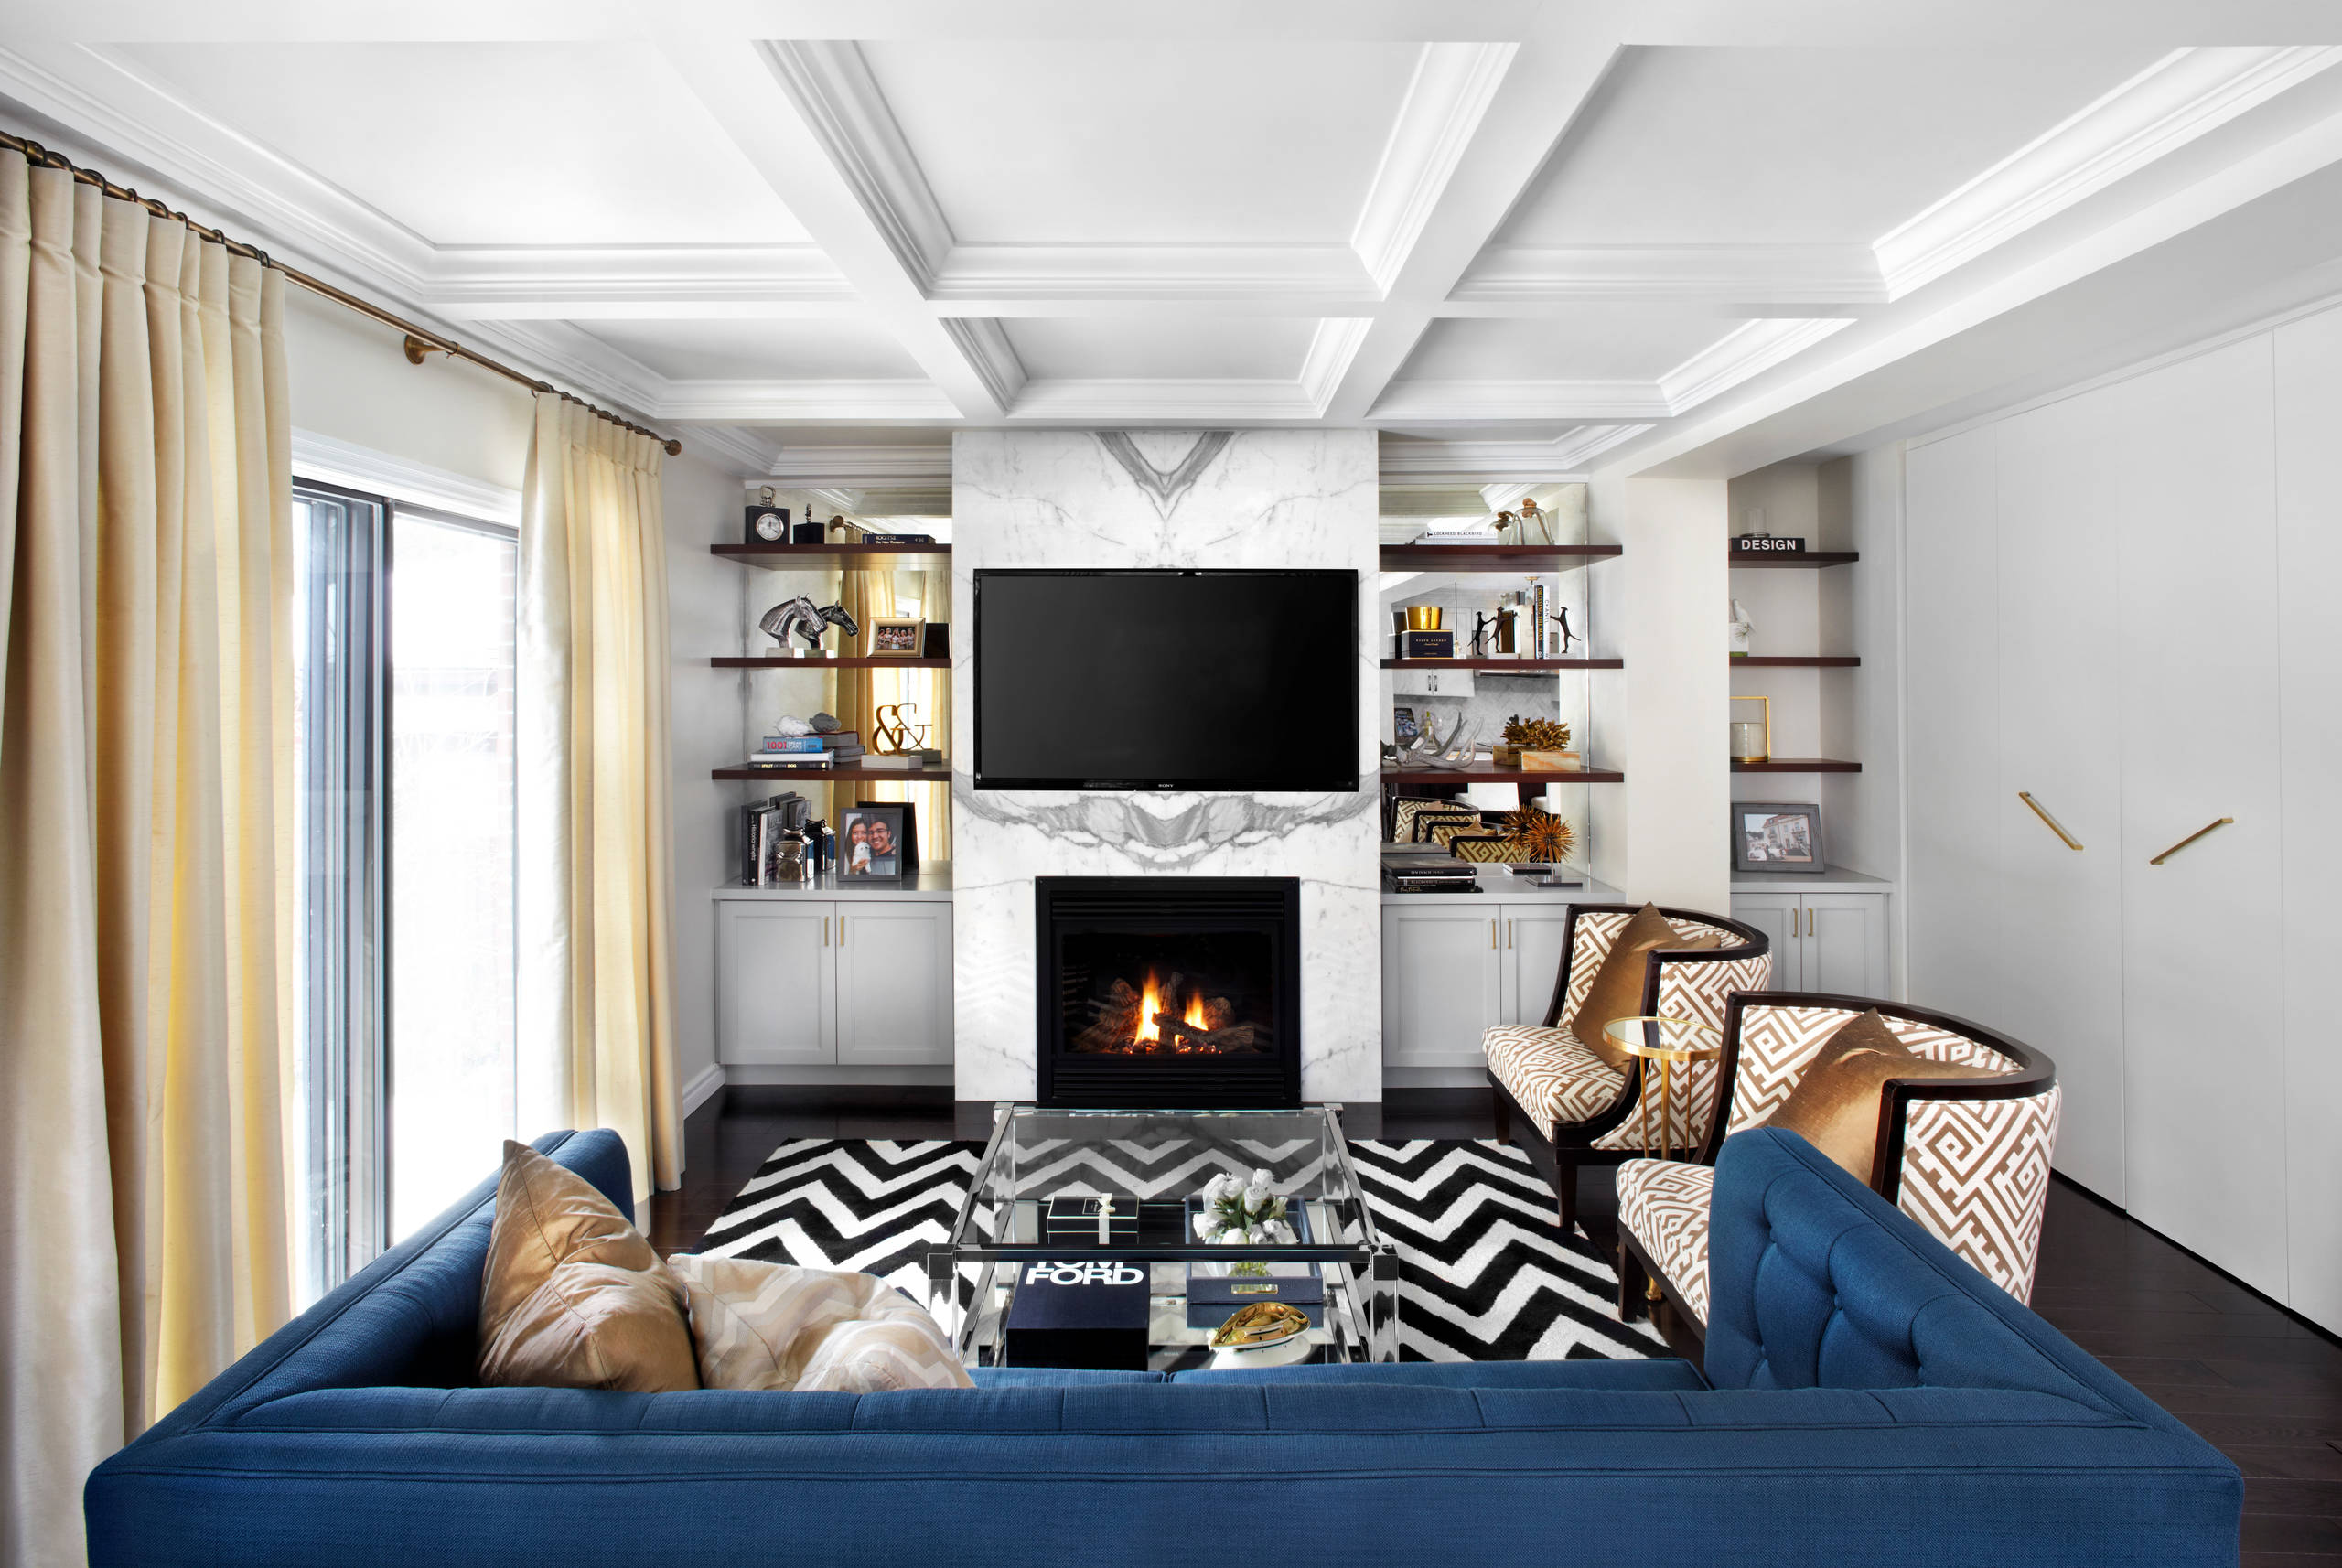 White Carrera Marble Fireplace Surround - Photos & Ideas | Houzz